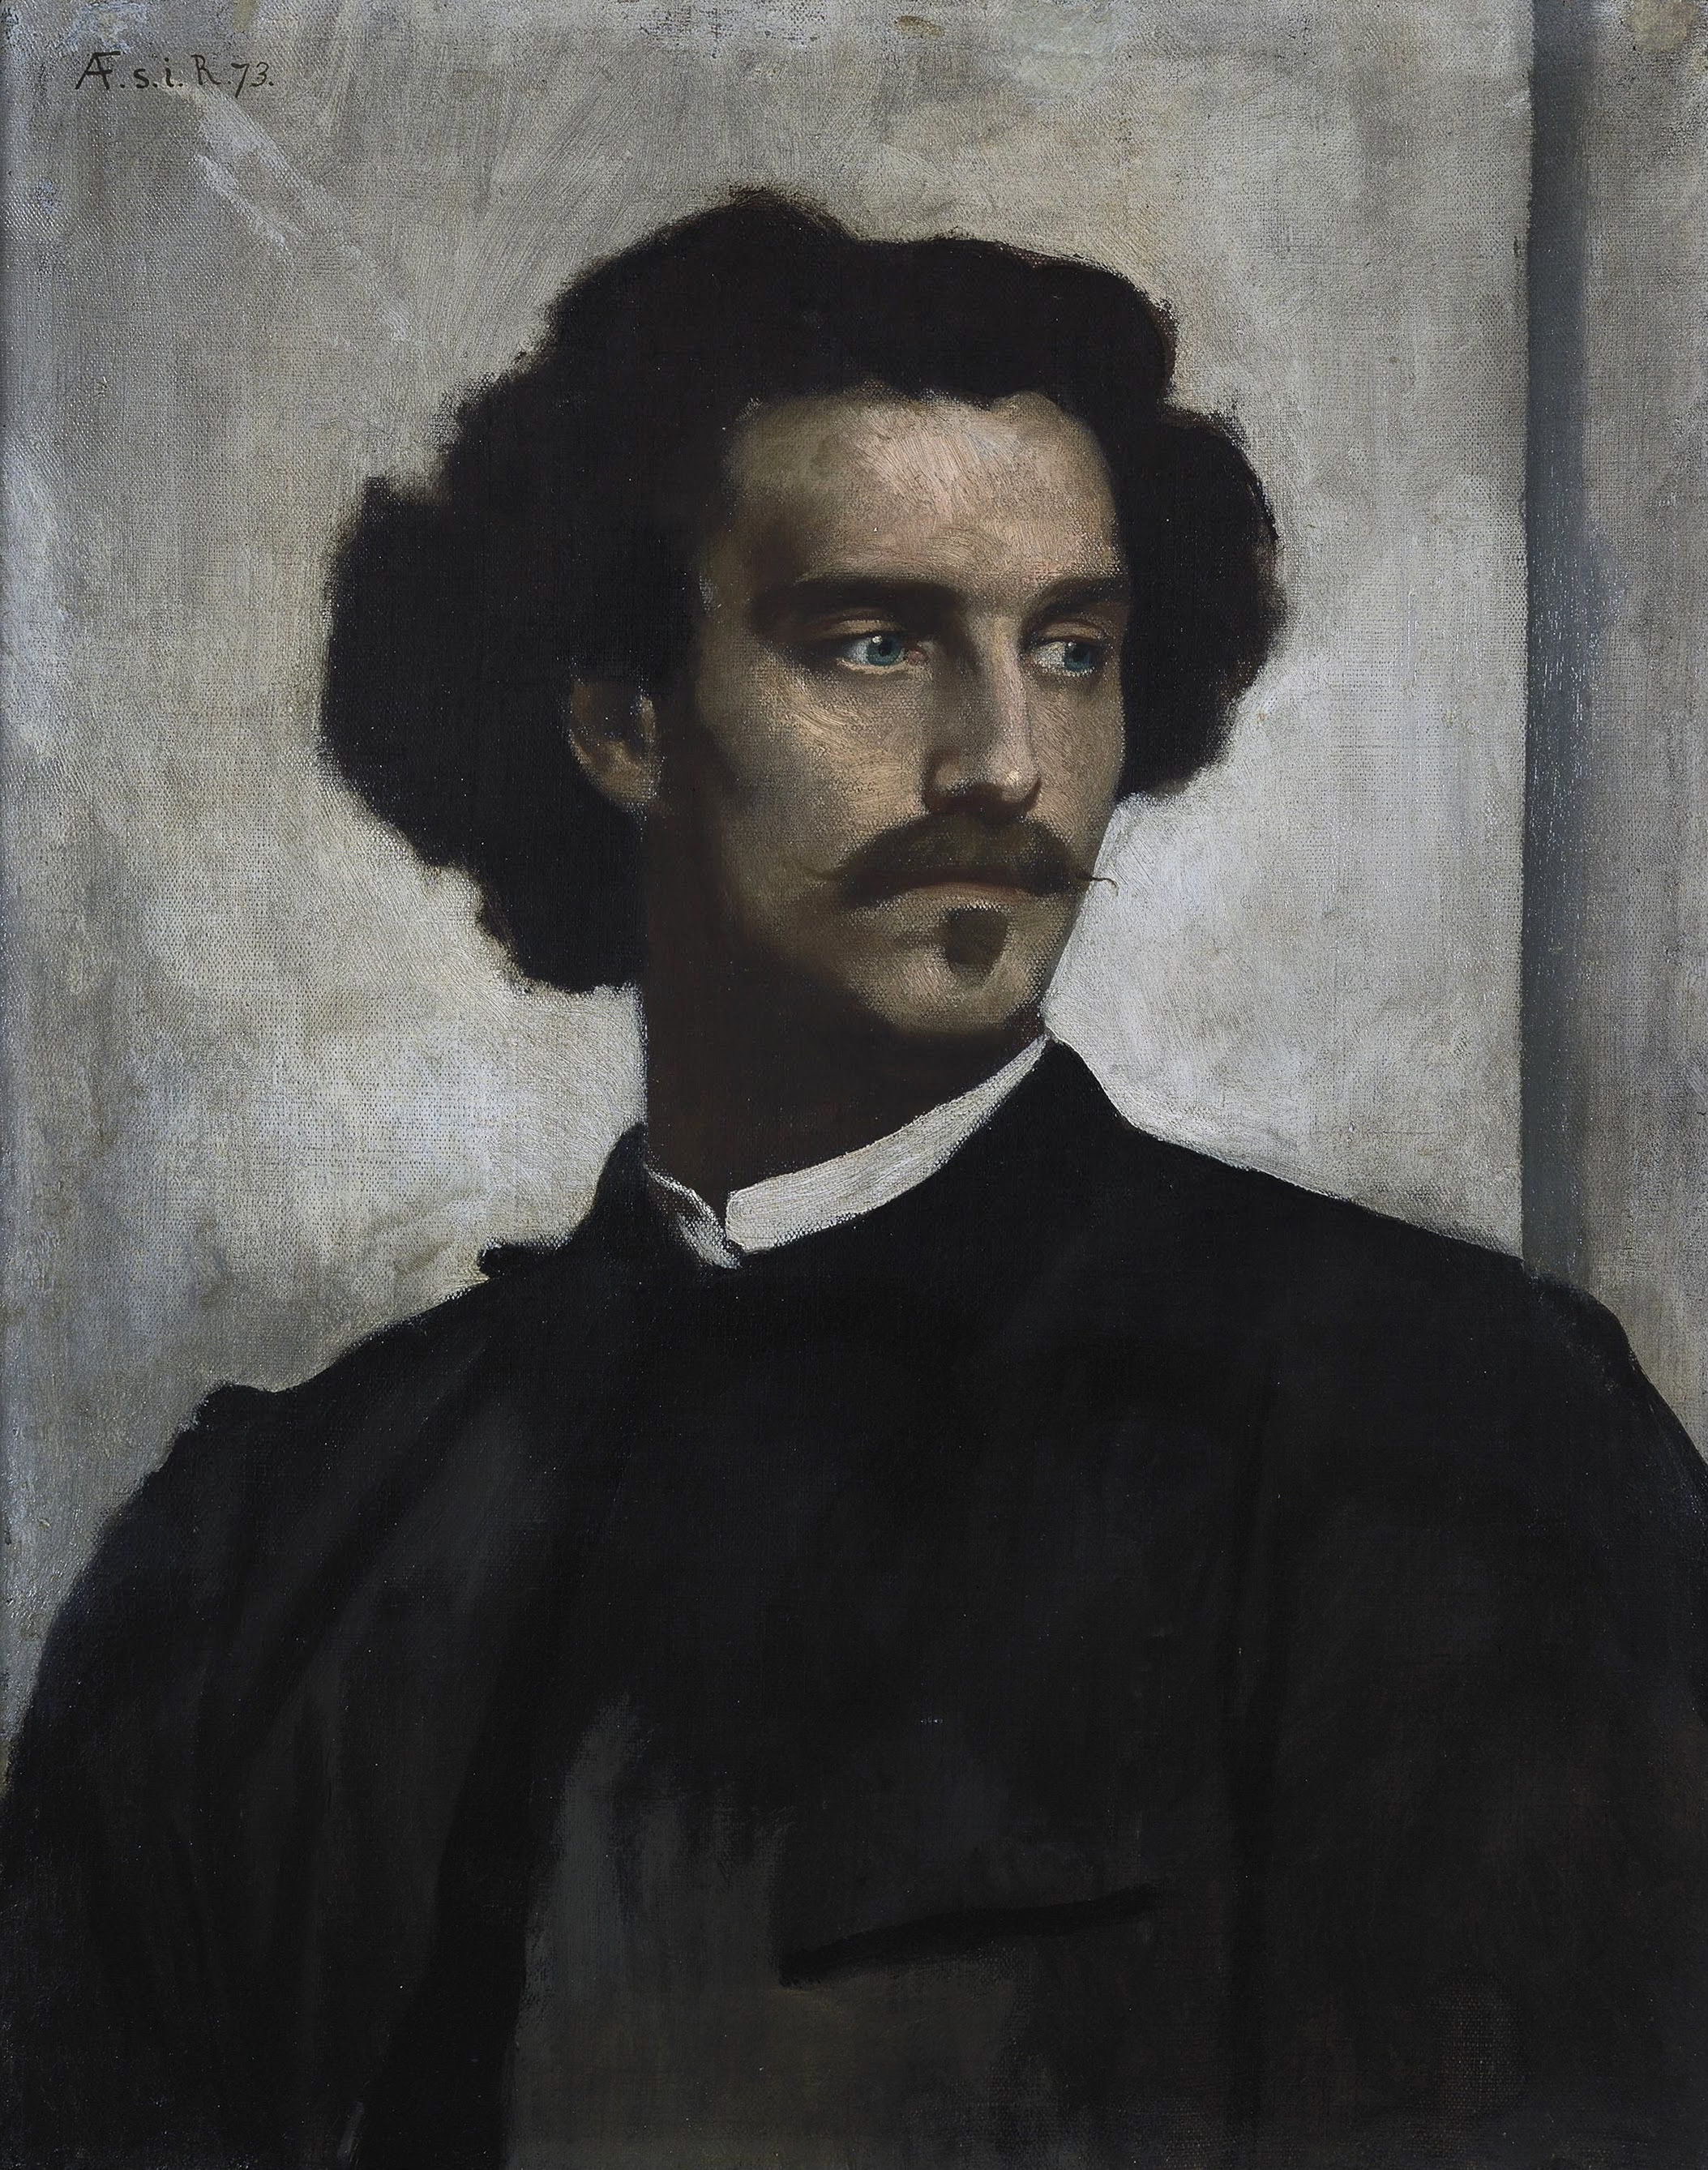 Self-portrait by Anselm Friedrich Feuerbach-Portrait Painting